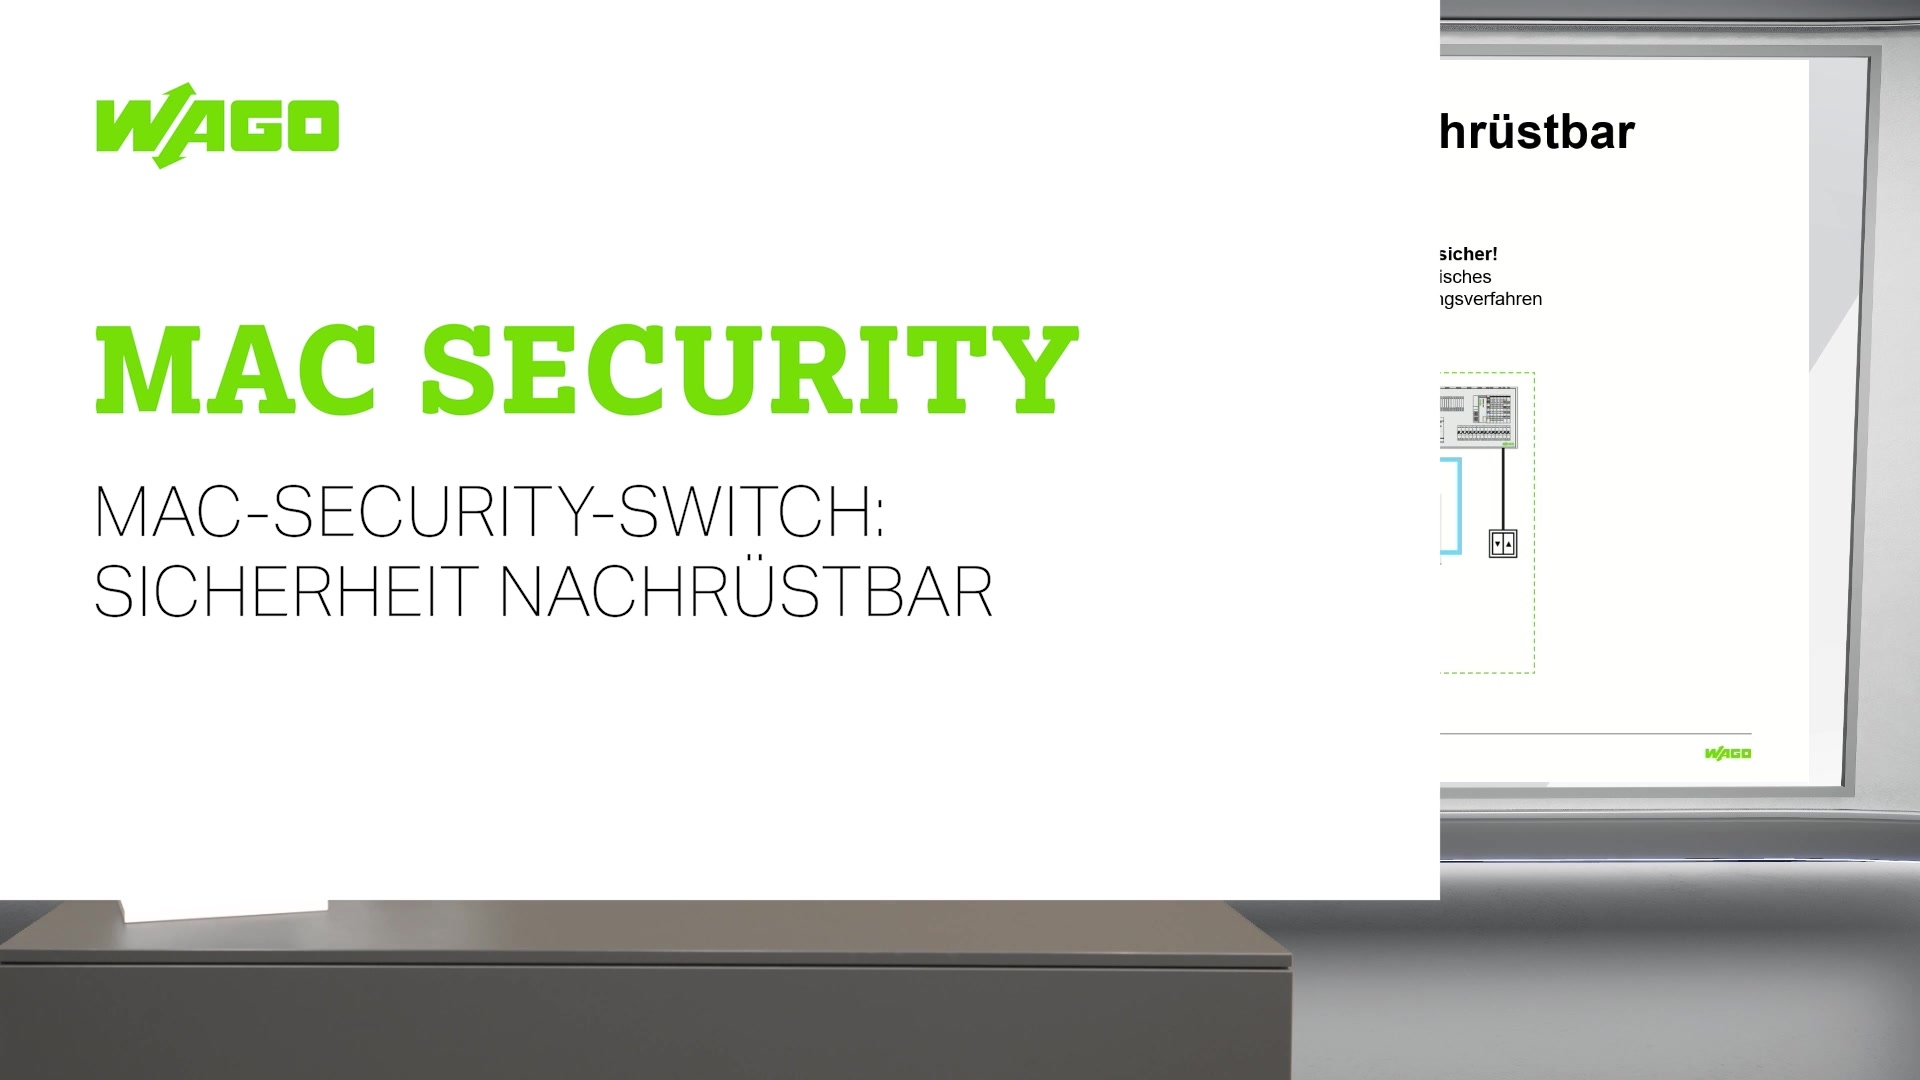 MAC-Security-Switch: Sicherheit nachrüstbar